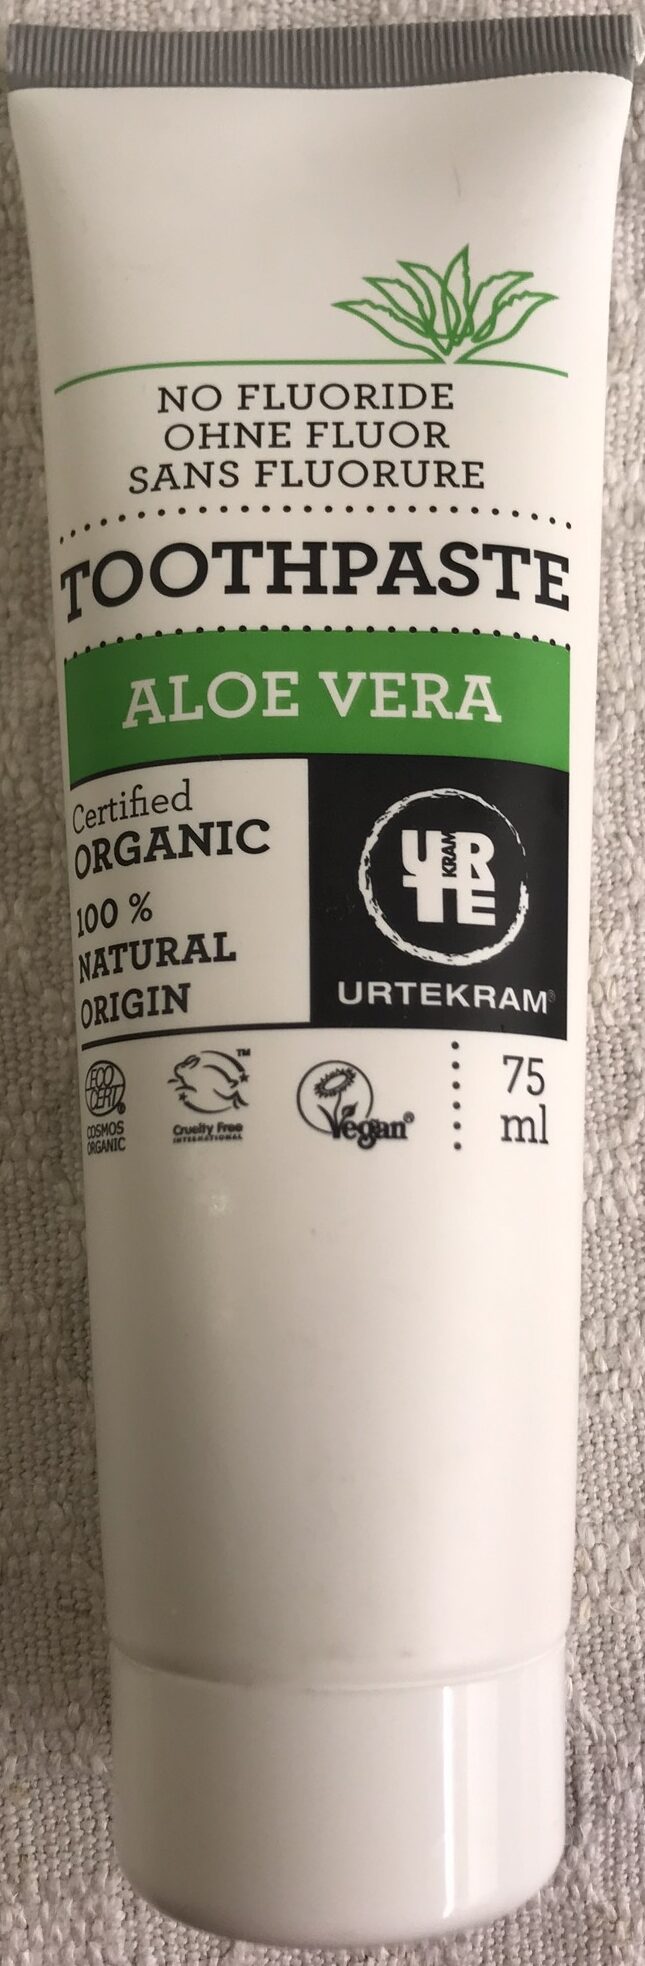 Toothpaste Aloe Vera - Product - en